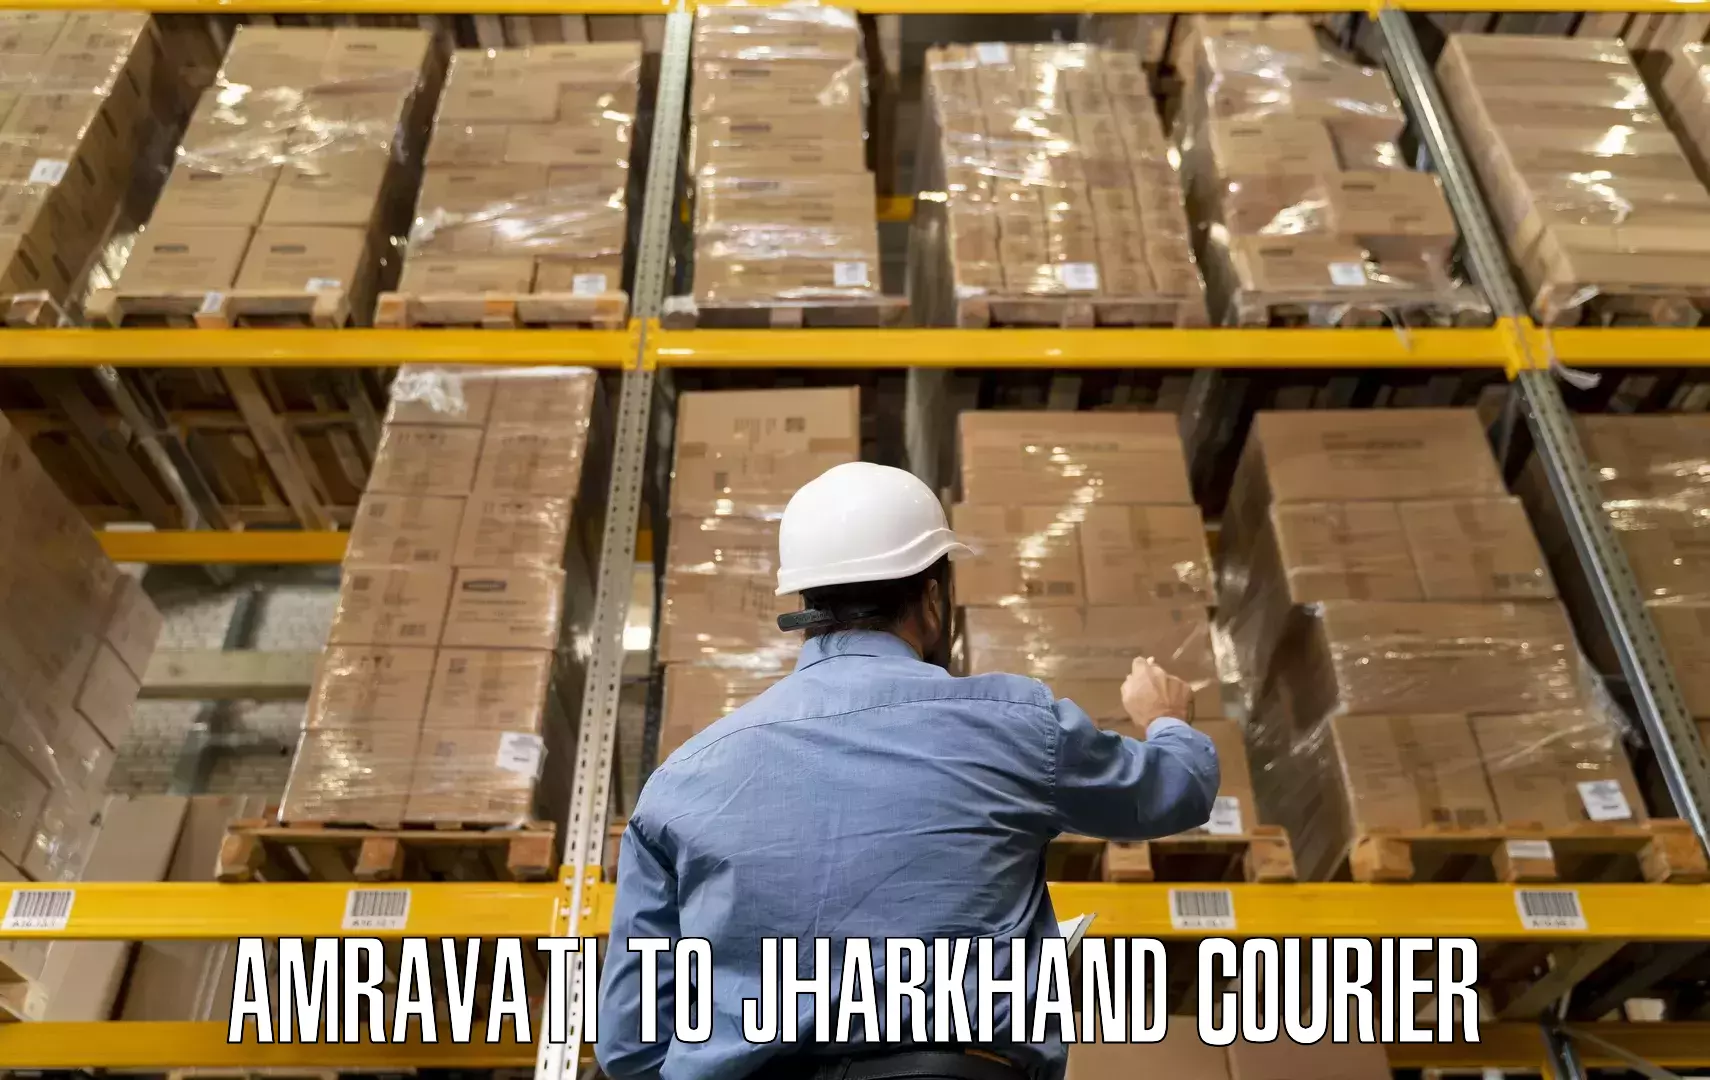 Professional home movers Amravati to Chandankiyari